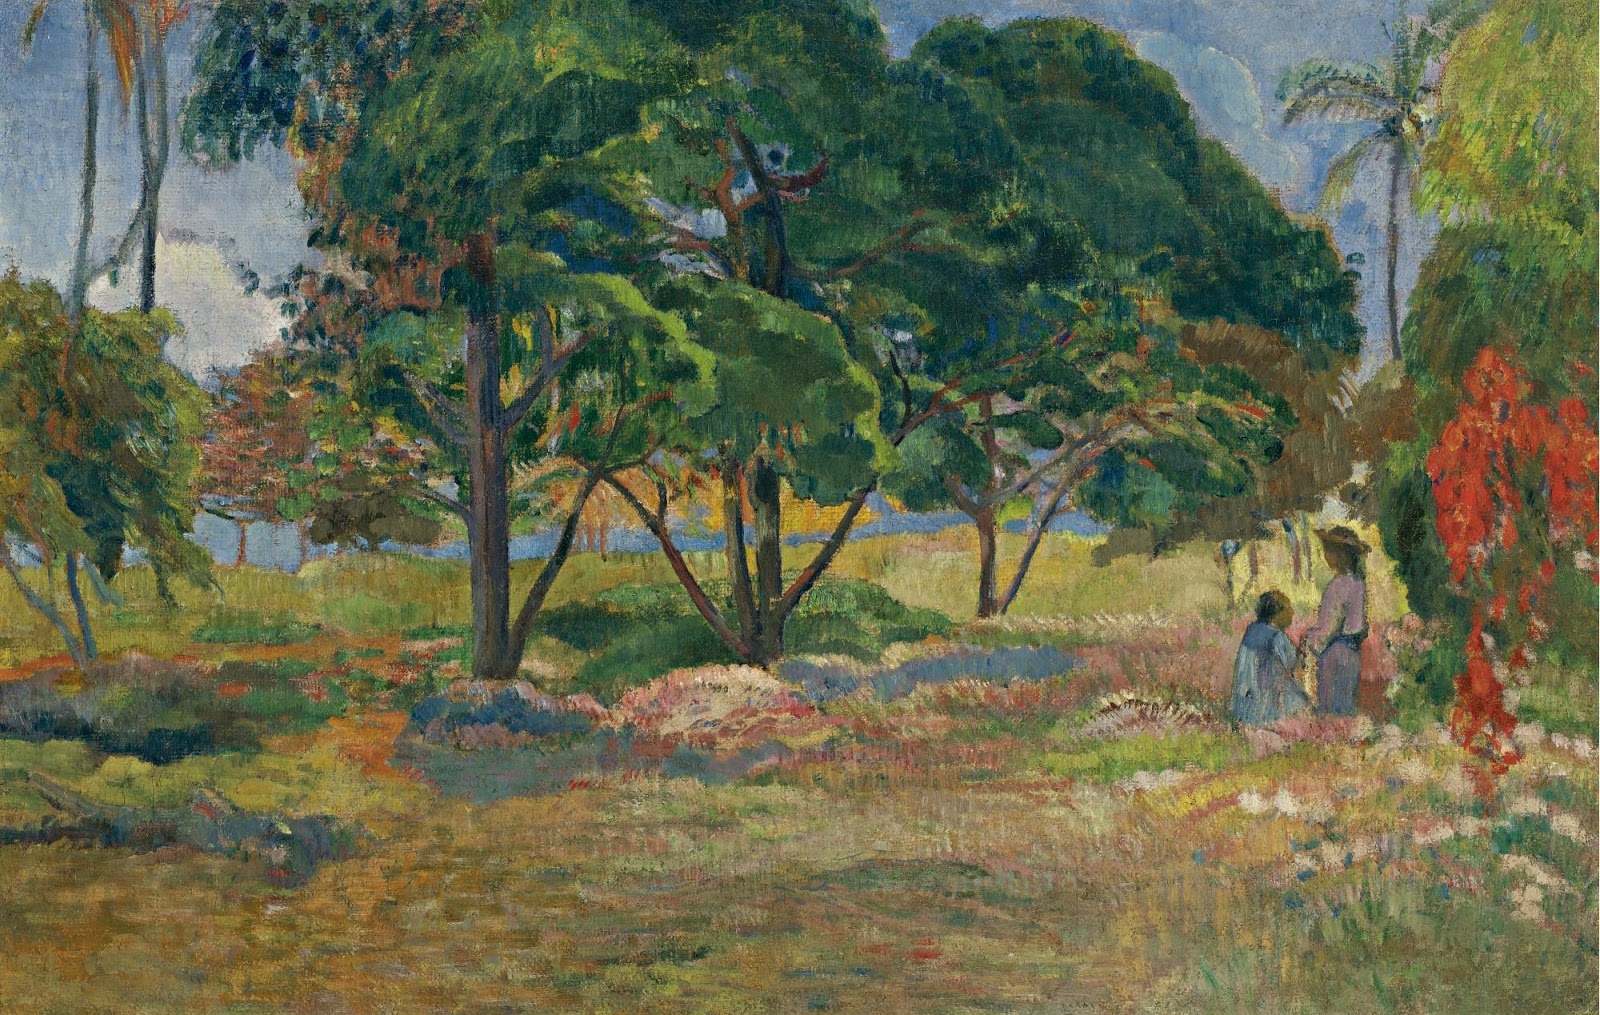 Paul+Gauguin-1848-1903 (396).jpg